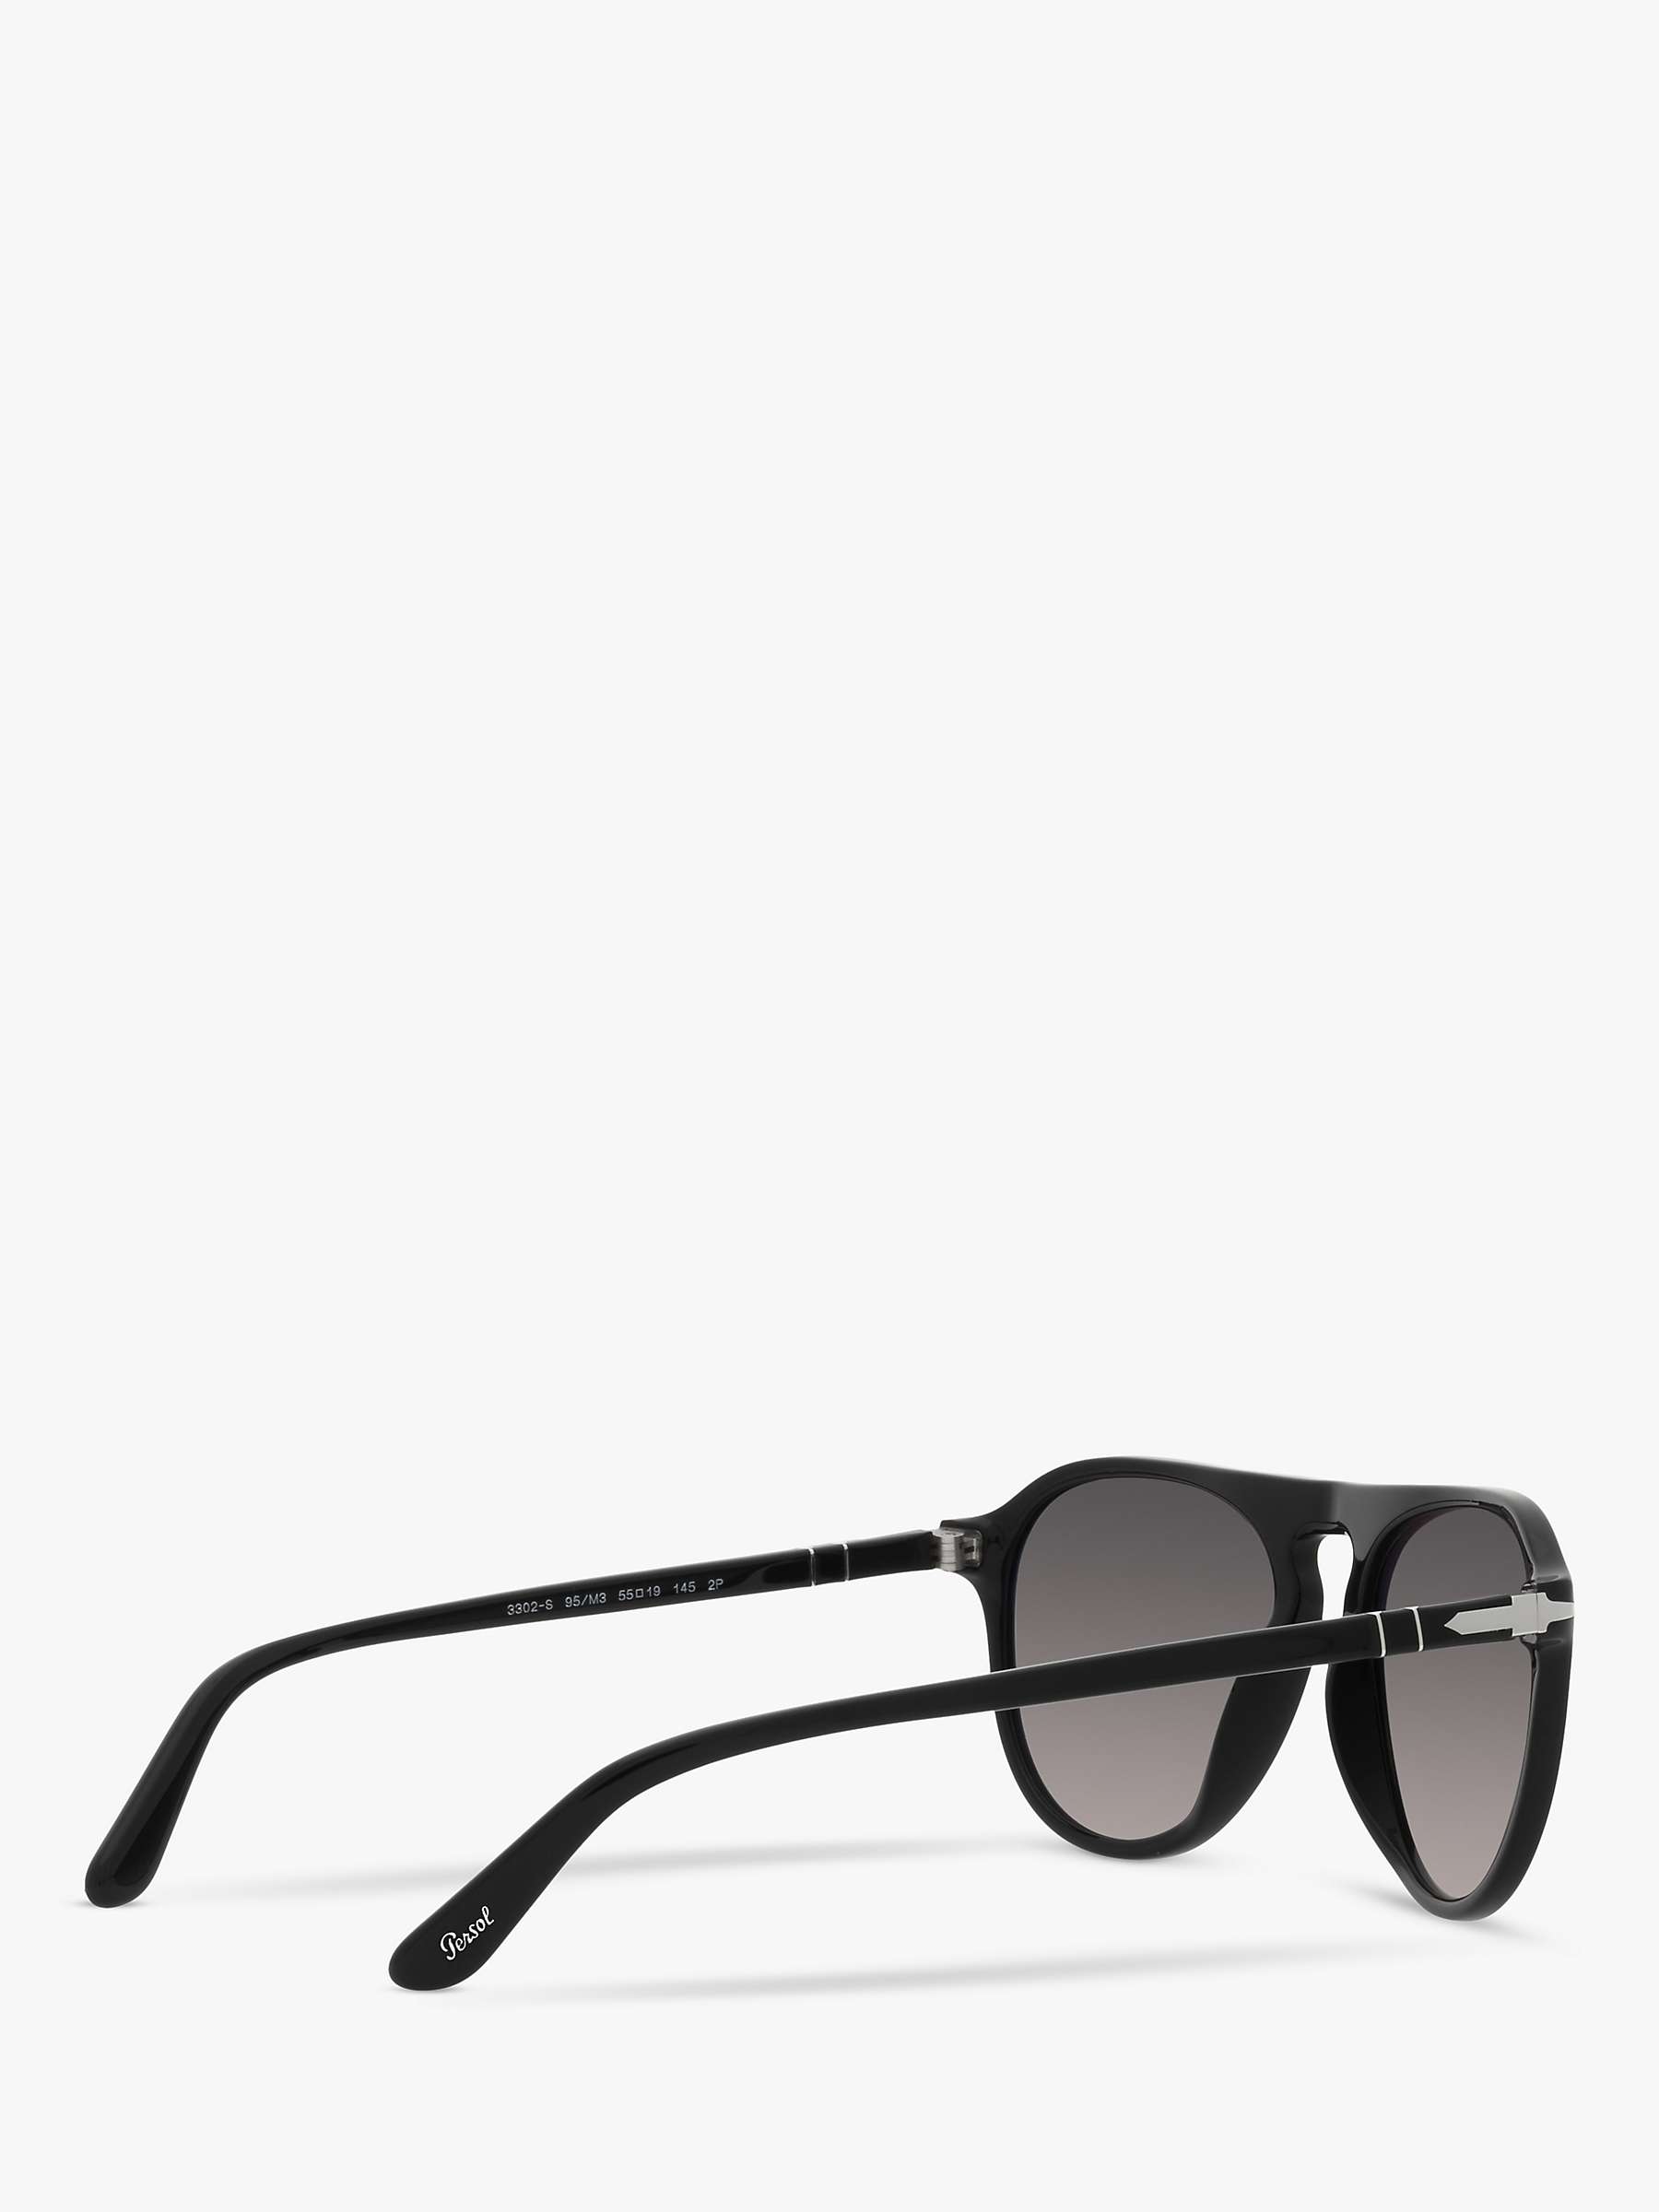 Buy Persol PO3302S Unisex Aviator Polarised Sunglasses, Black/Grey Gradient Online at johnlewis.com